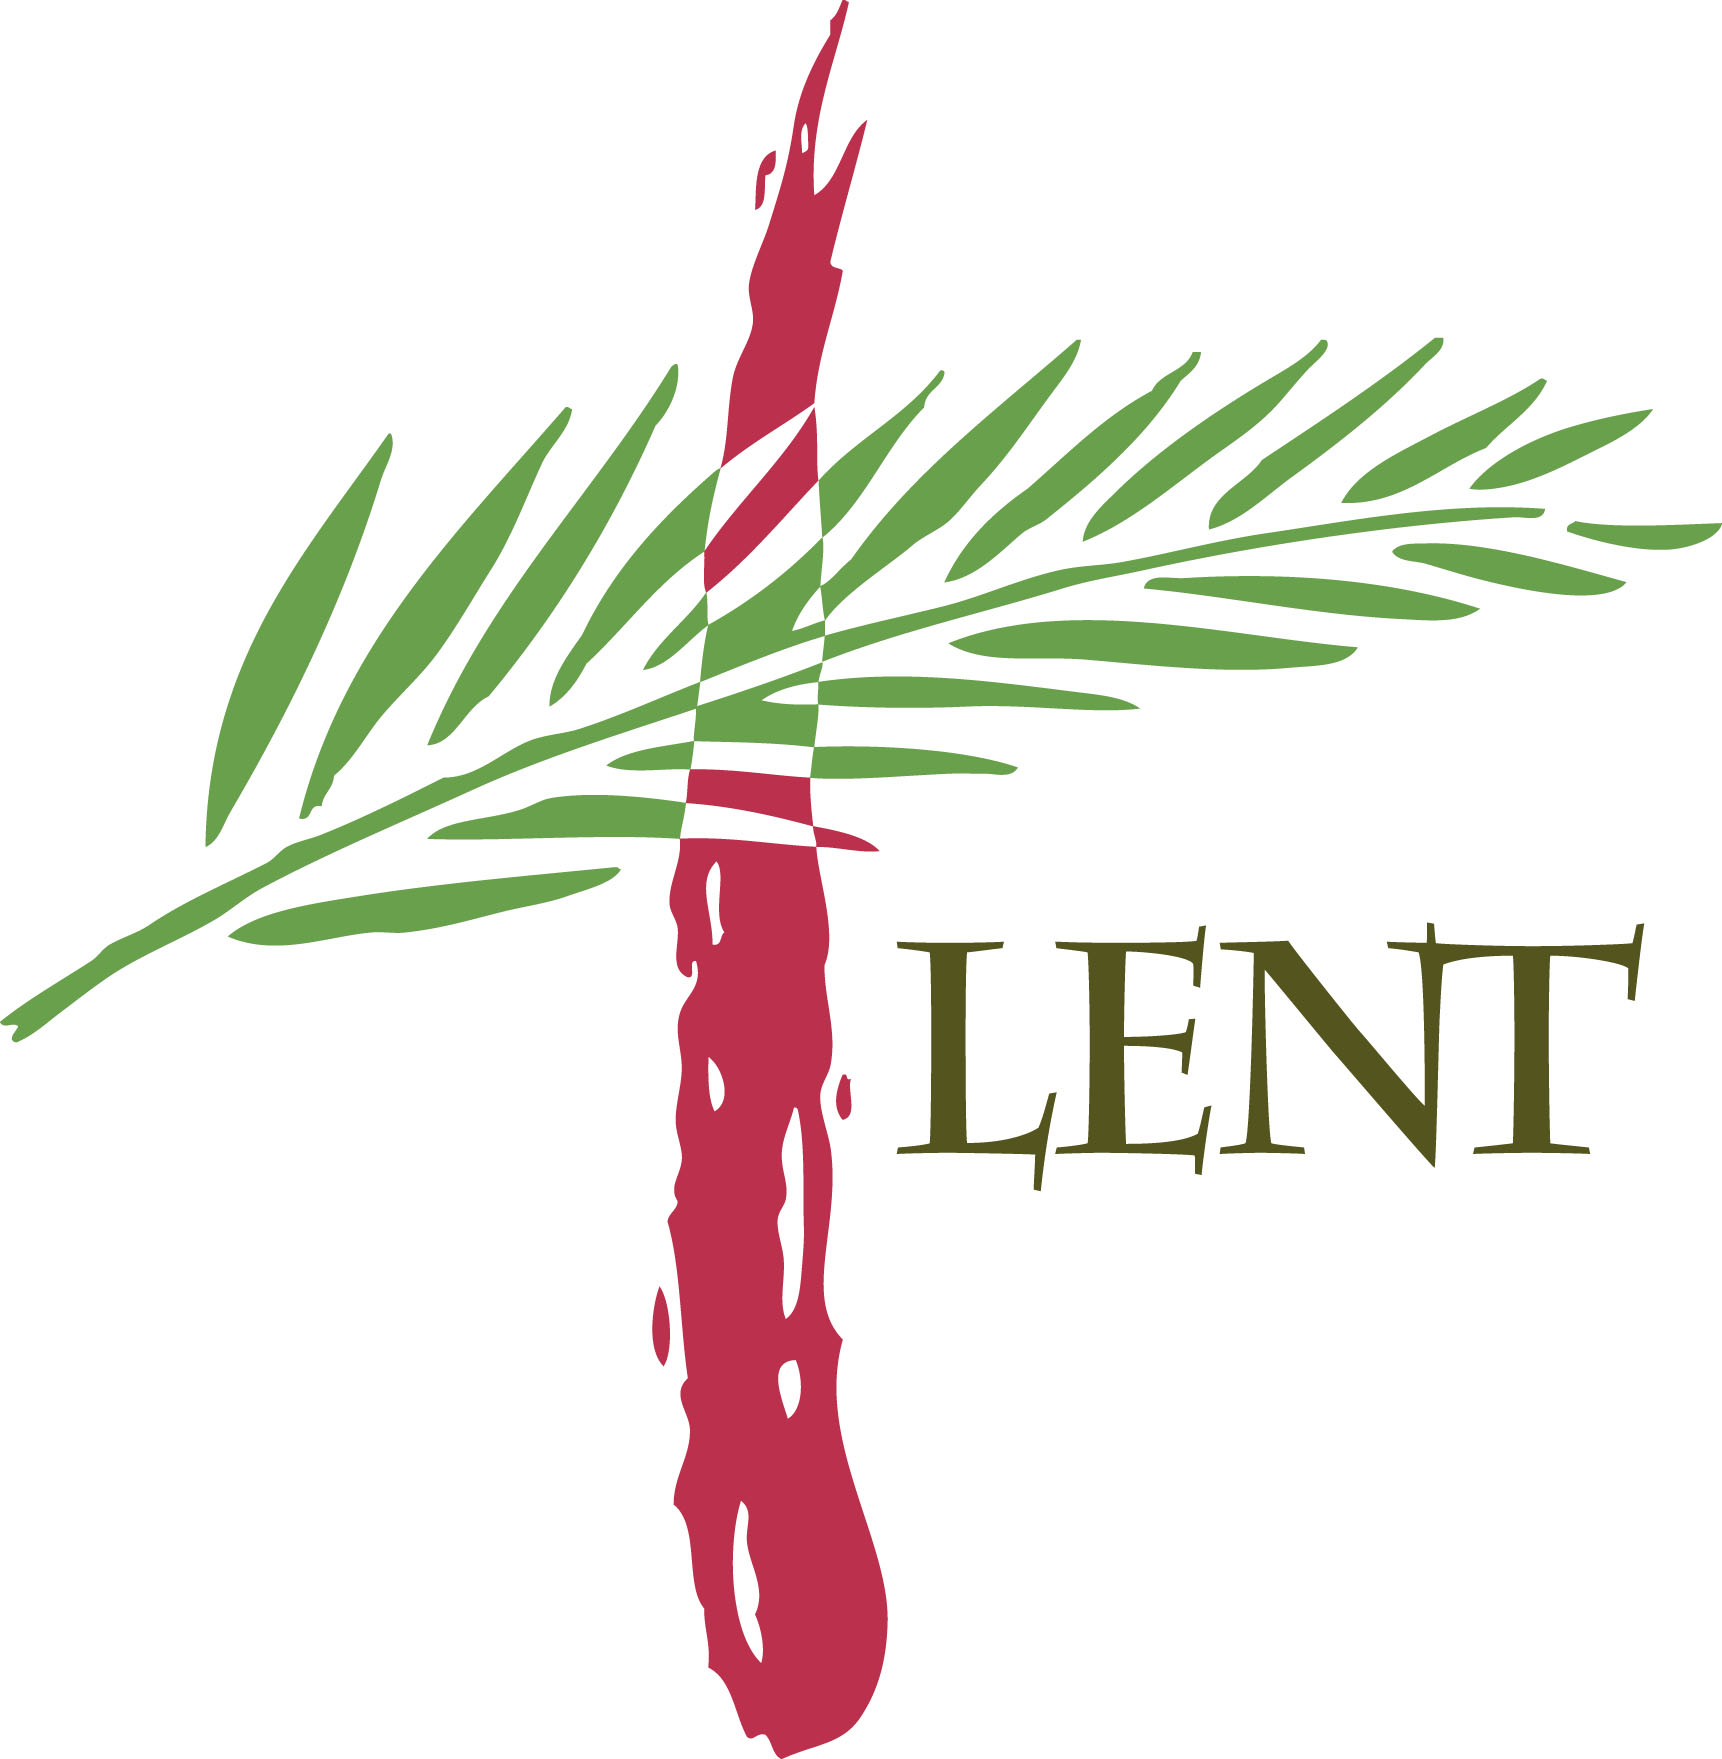 Lent Clipart Free - ClipArt Best